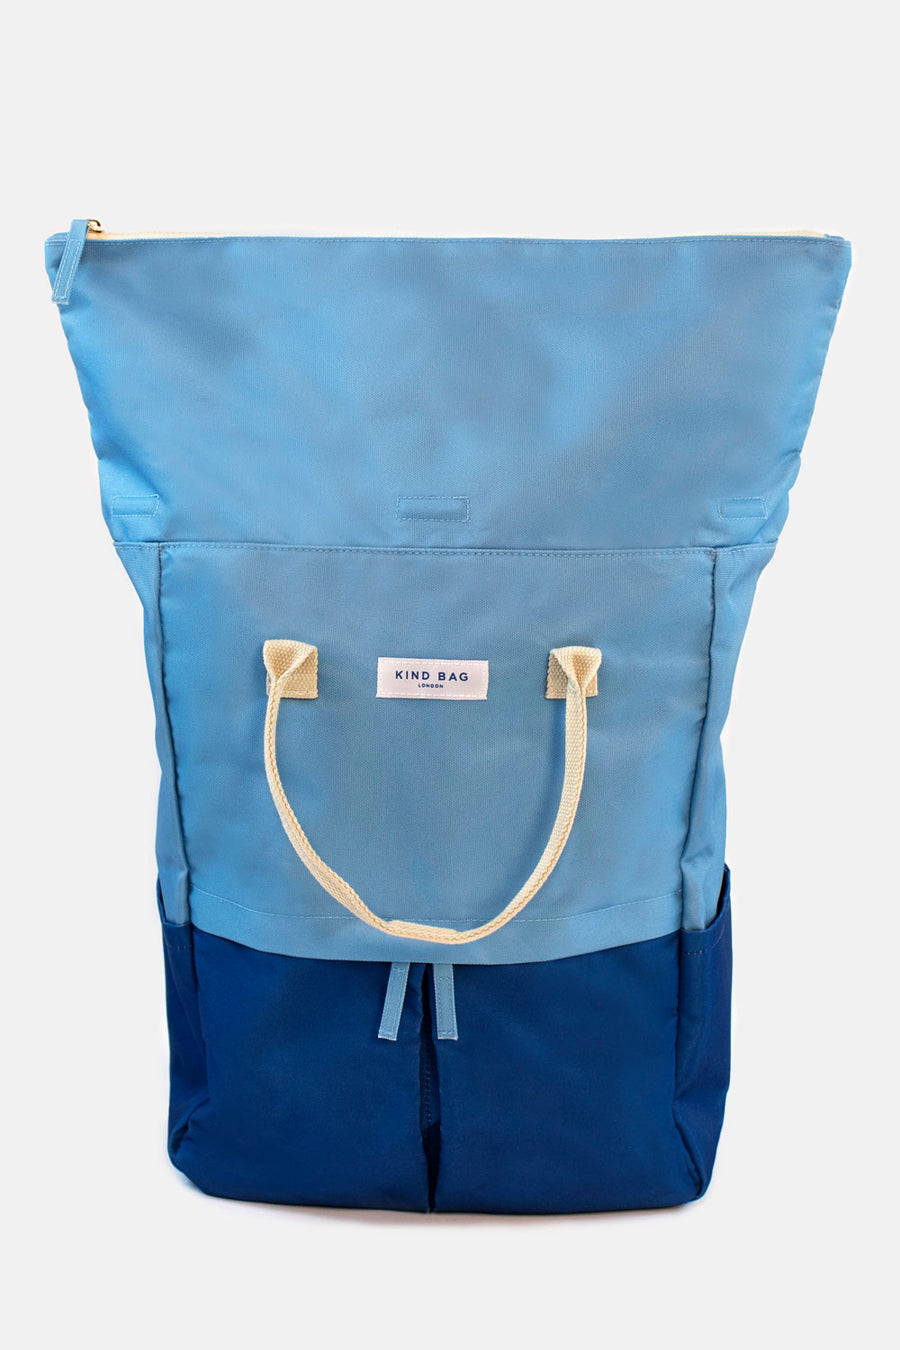 Light Blue & Navy | “Hackney” 2.0 Backpack | Large